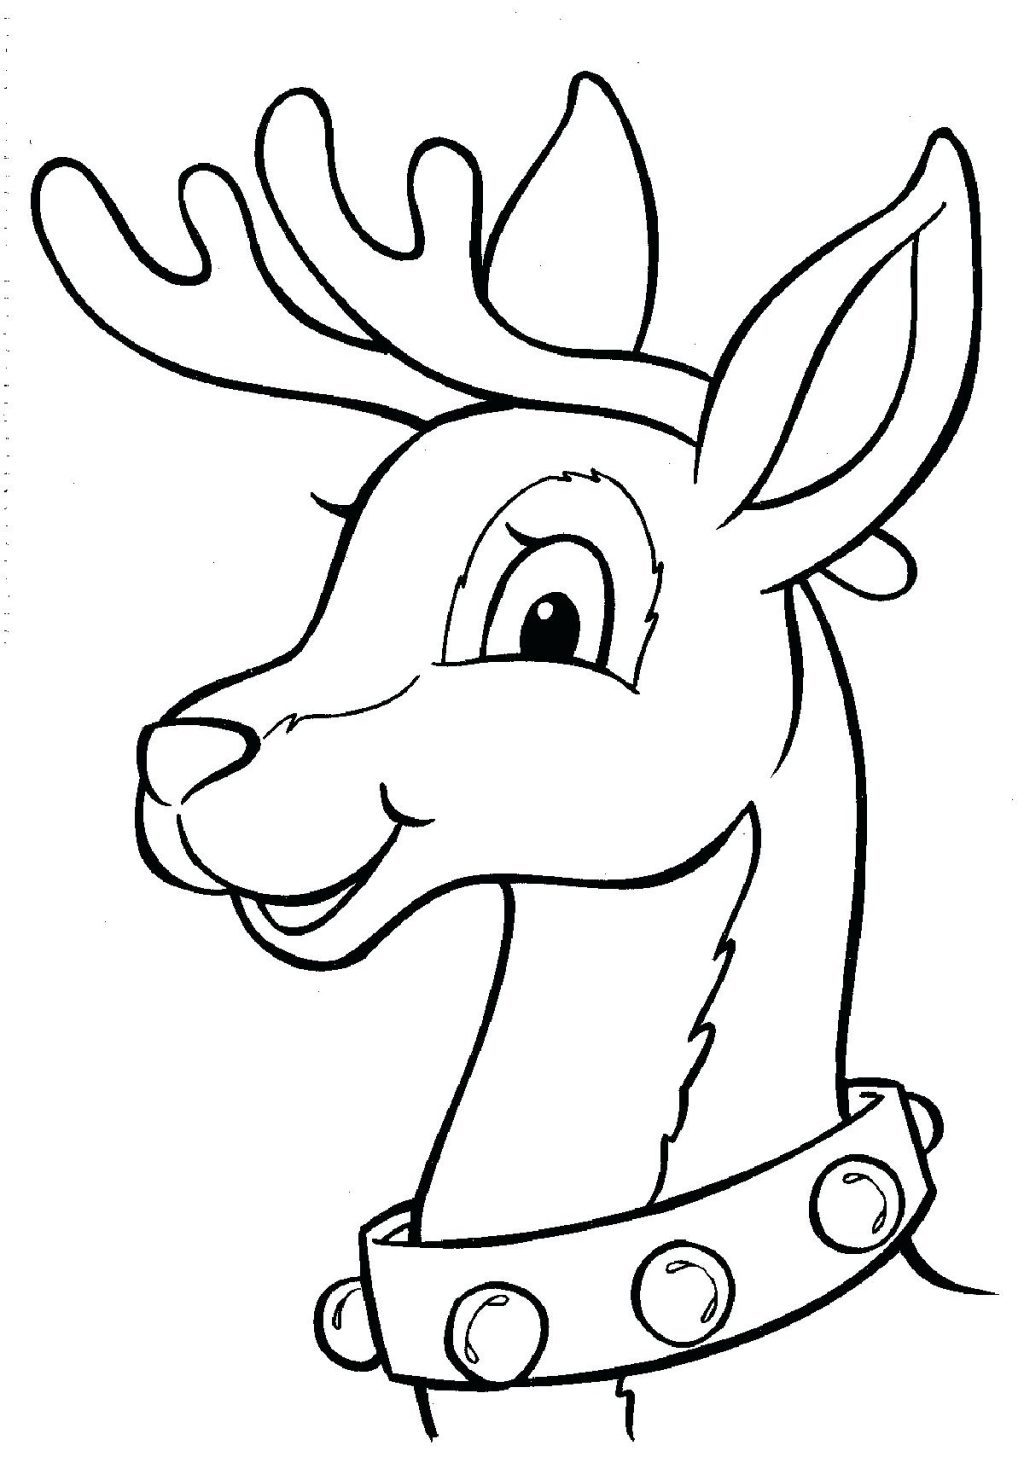 Reindeer Coloring Pages Free at GetDrawings | Free download